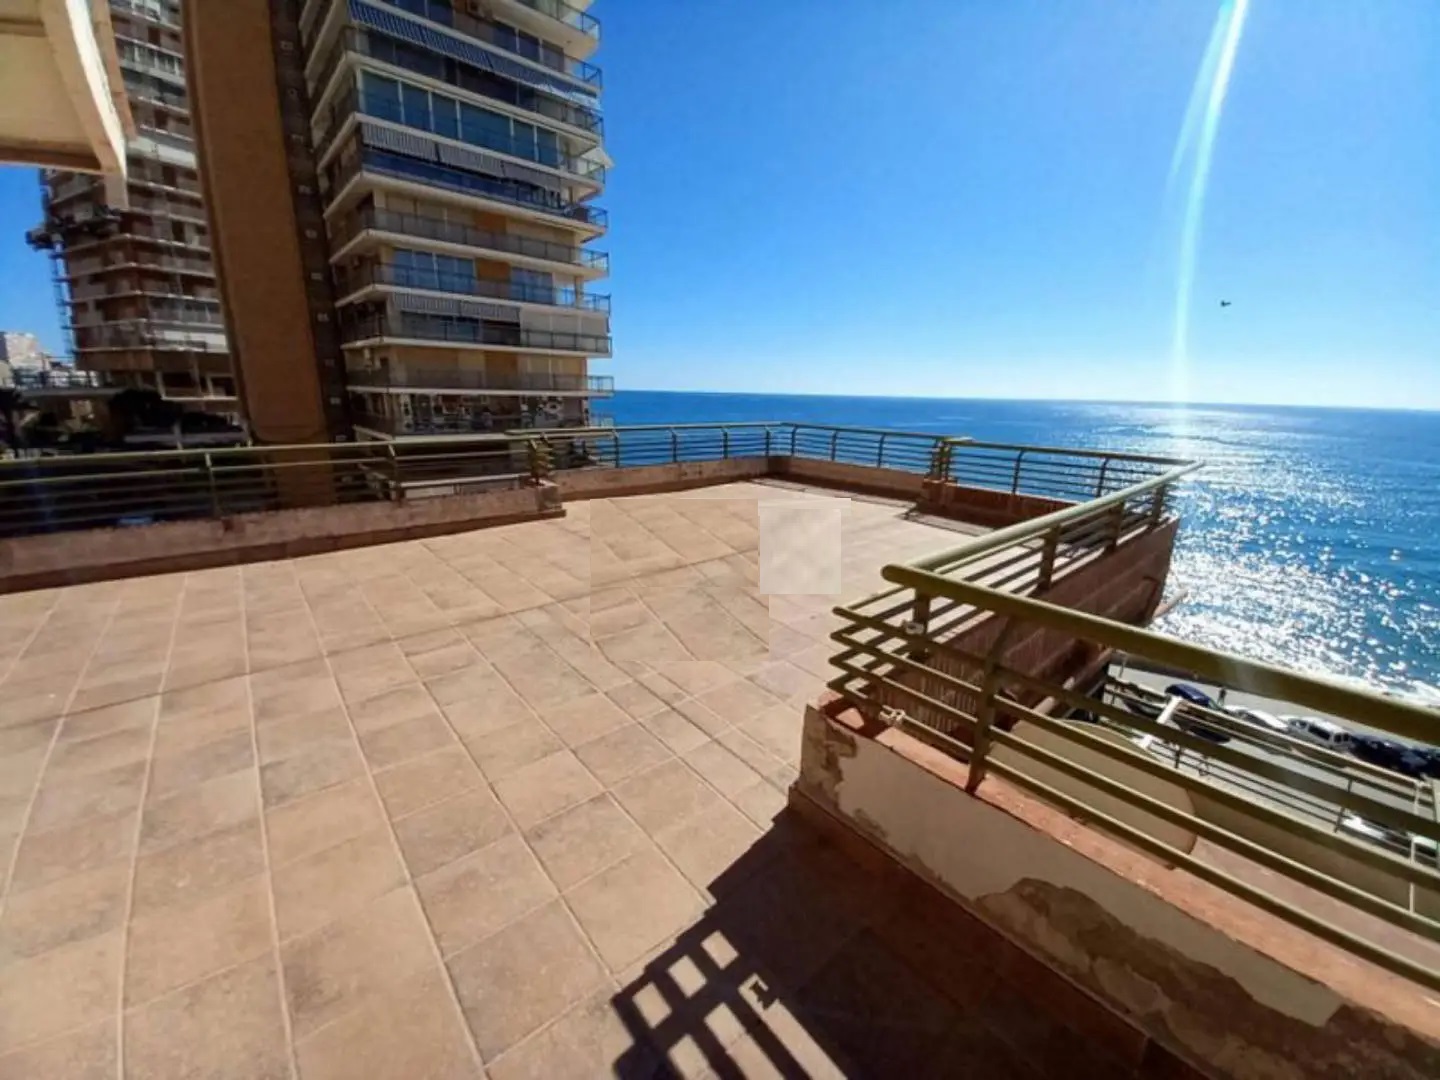 Piso en venta en calle sol naciente. residencial apartahotel garajes (Alicante/Alacant) por 275.000€ con 176m² y 3 habitaciones..